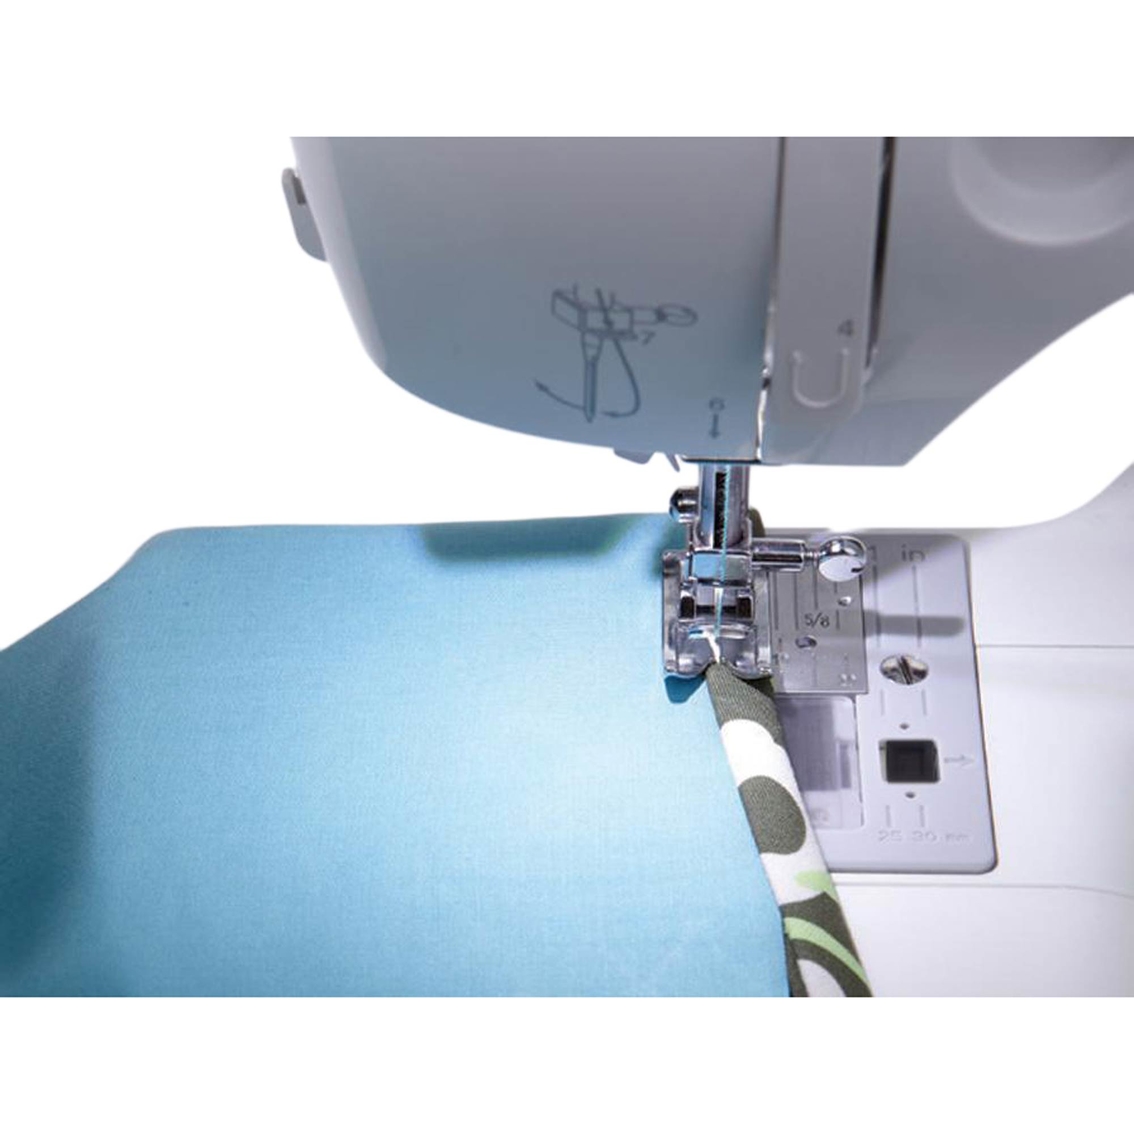 Singer Fashion Mate 3333 Sewing Machine - Image 5 of 6